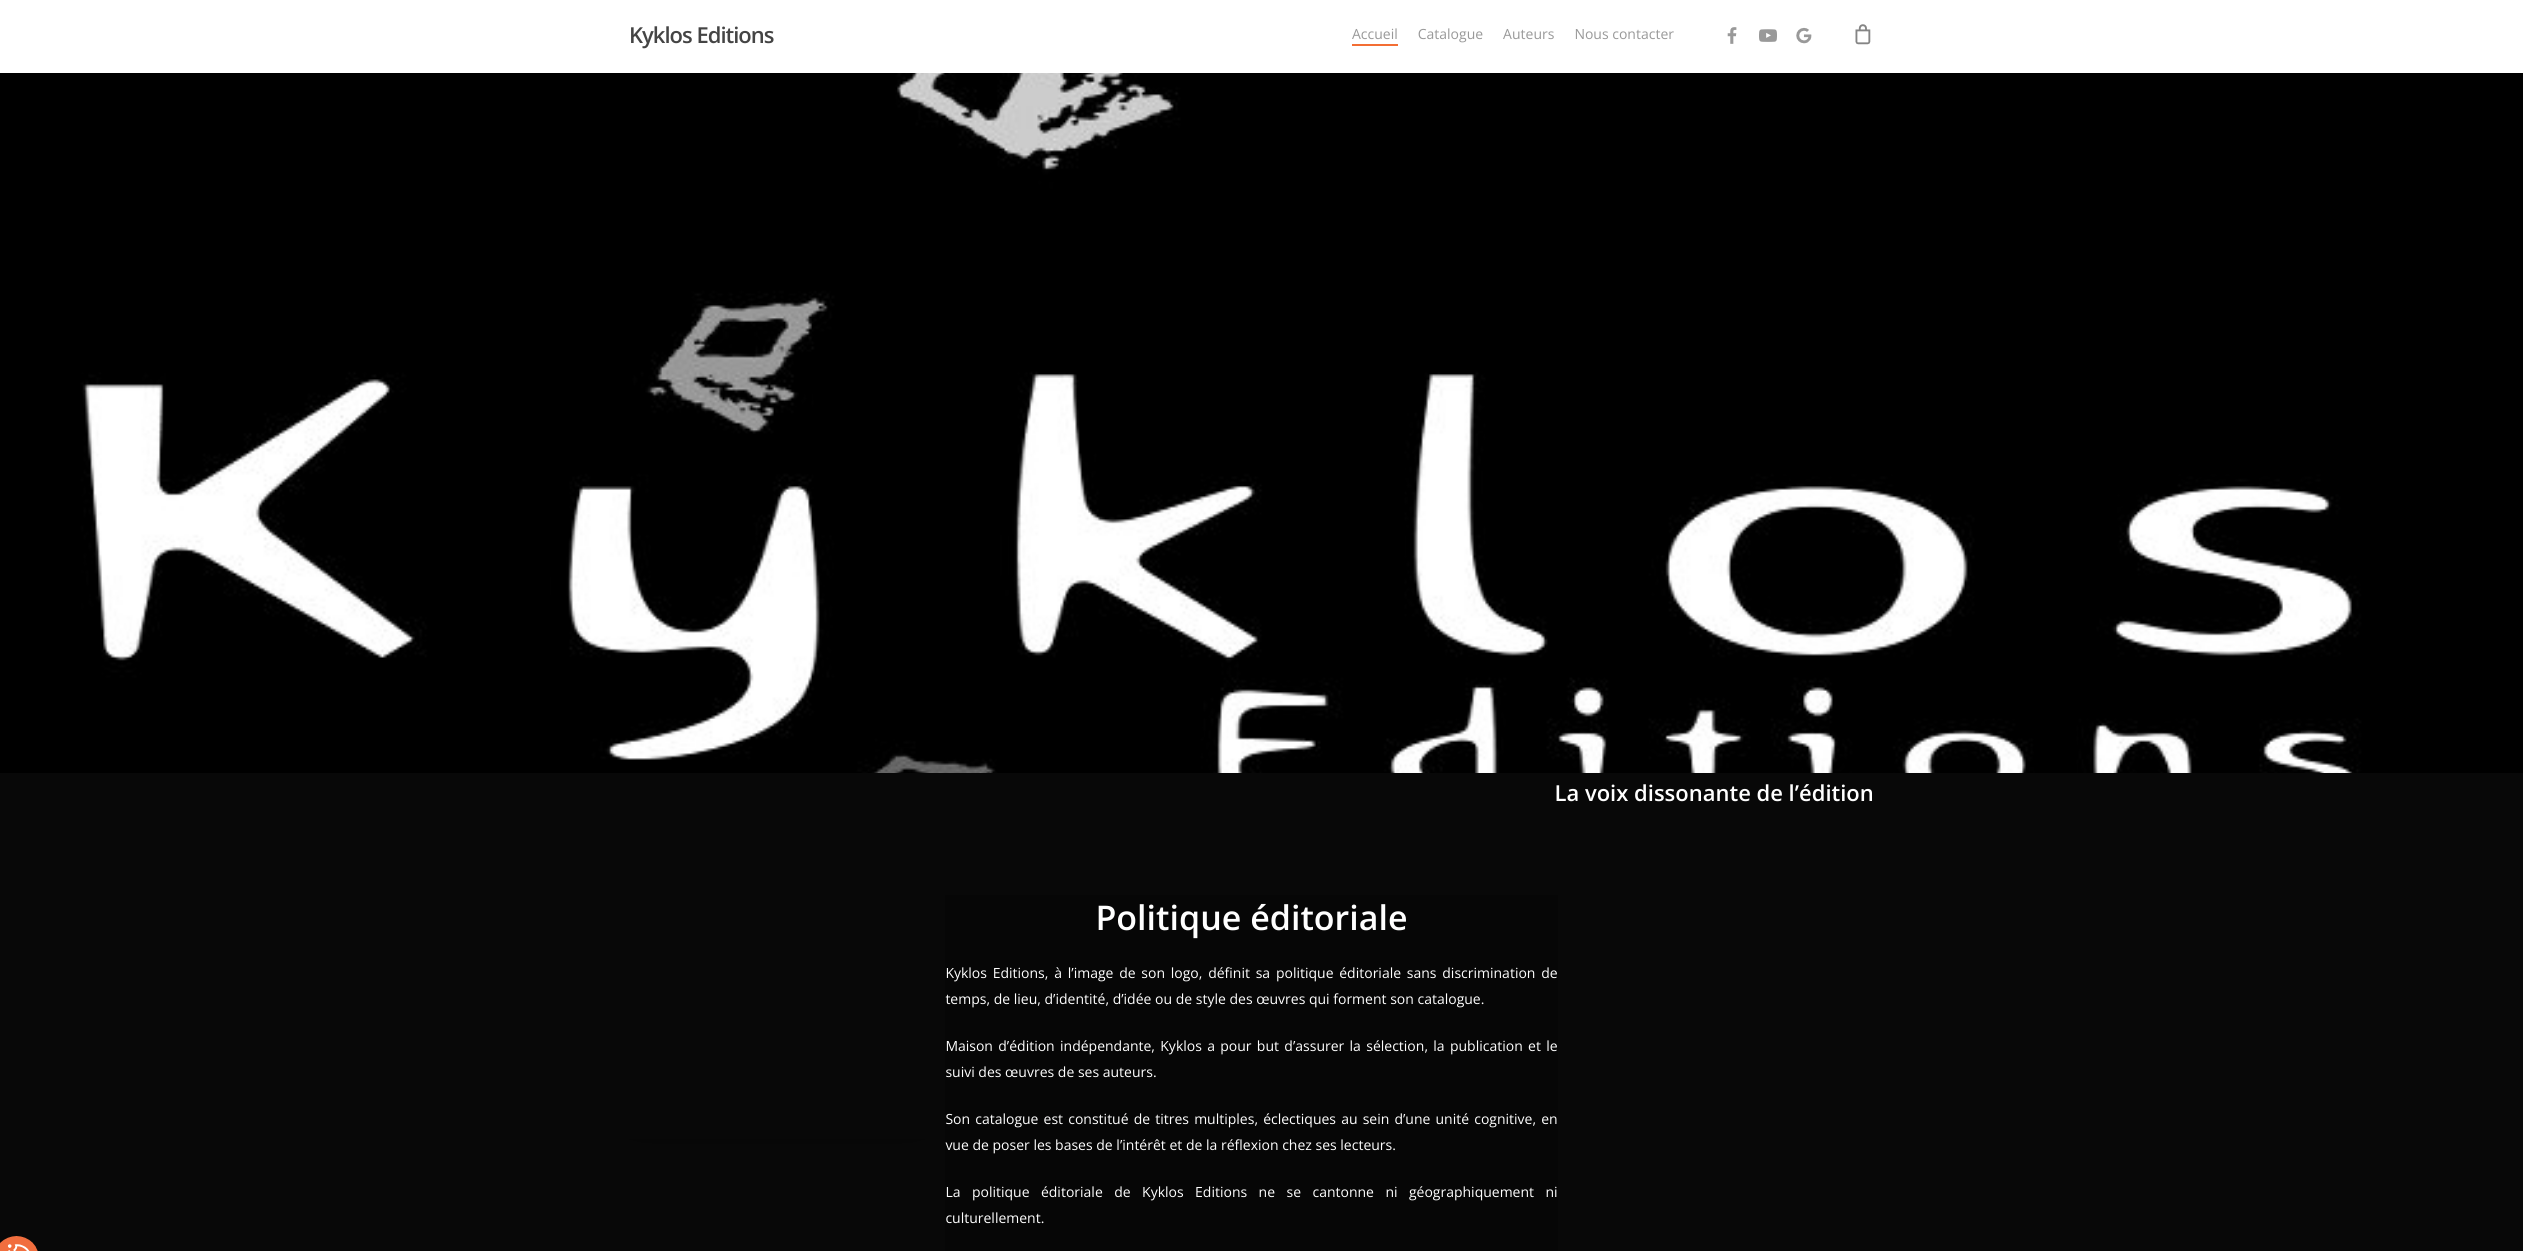 Kyklos Editions